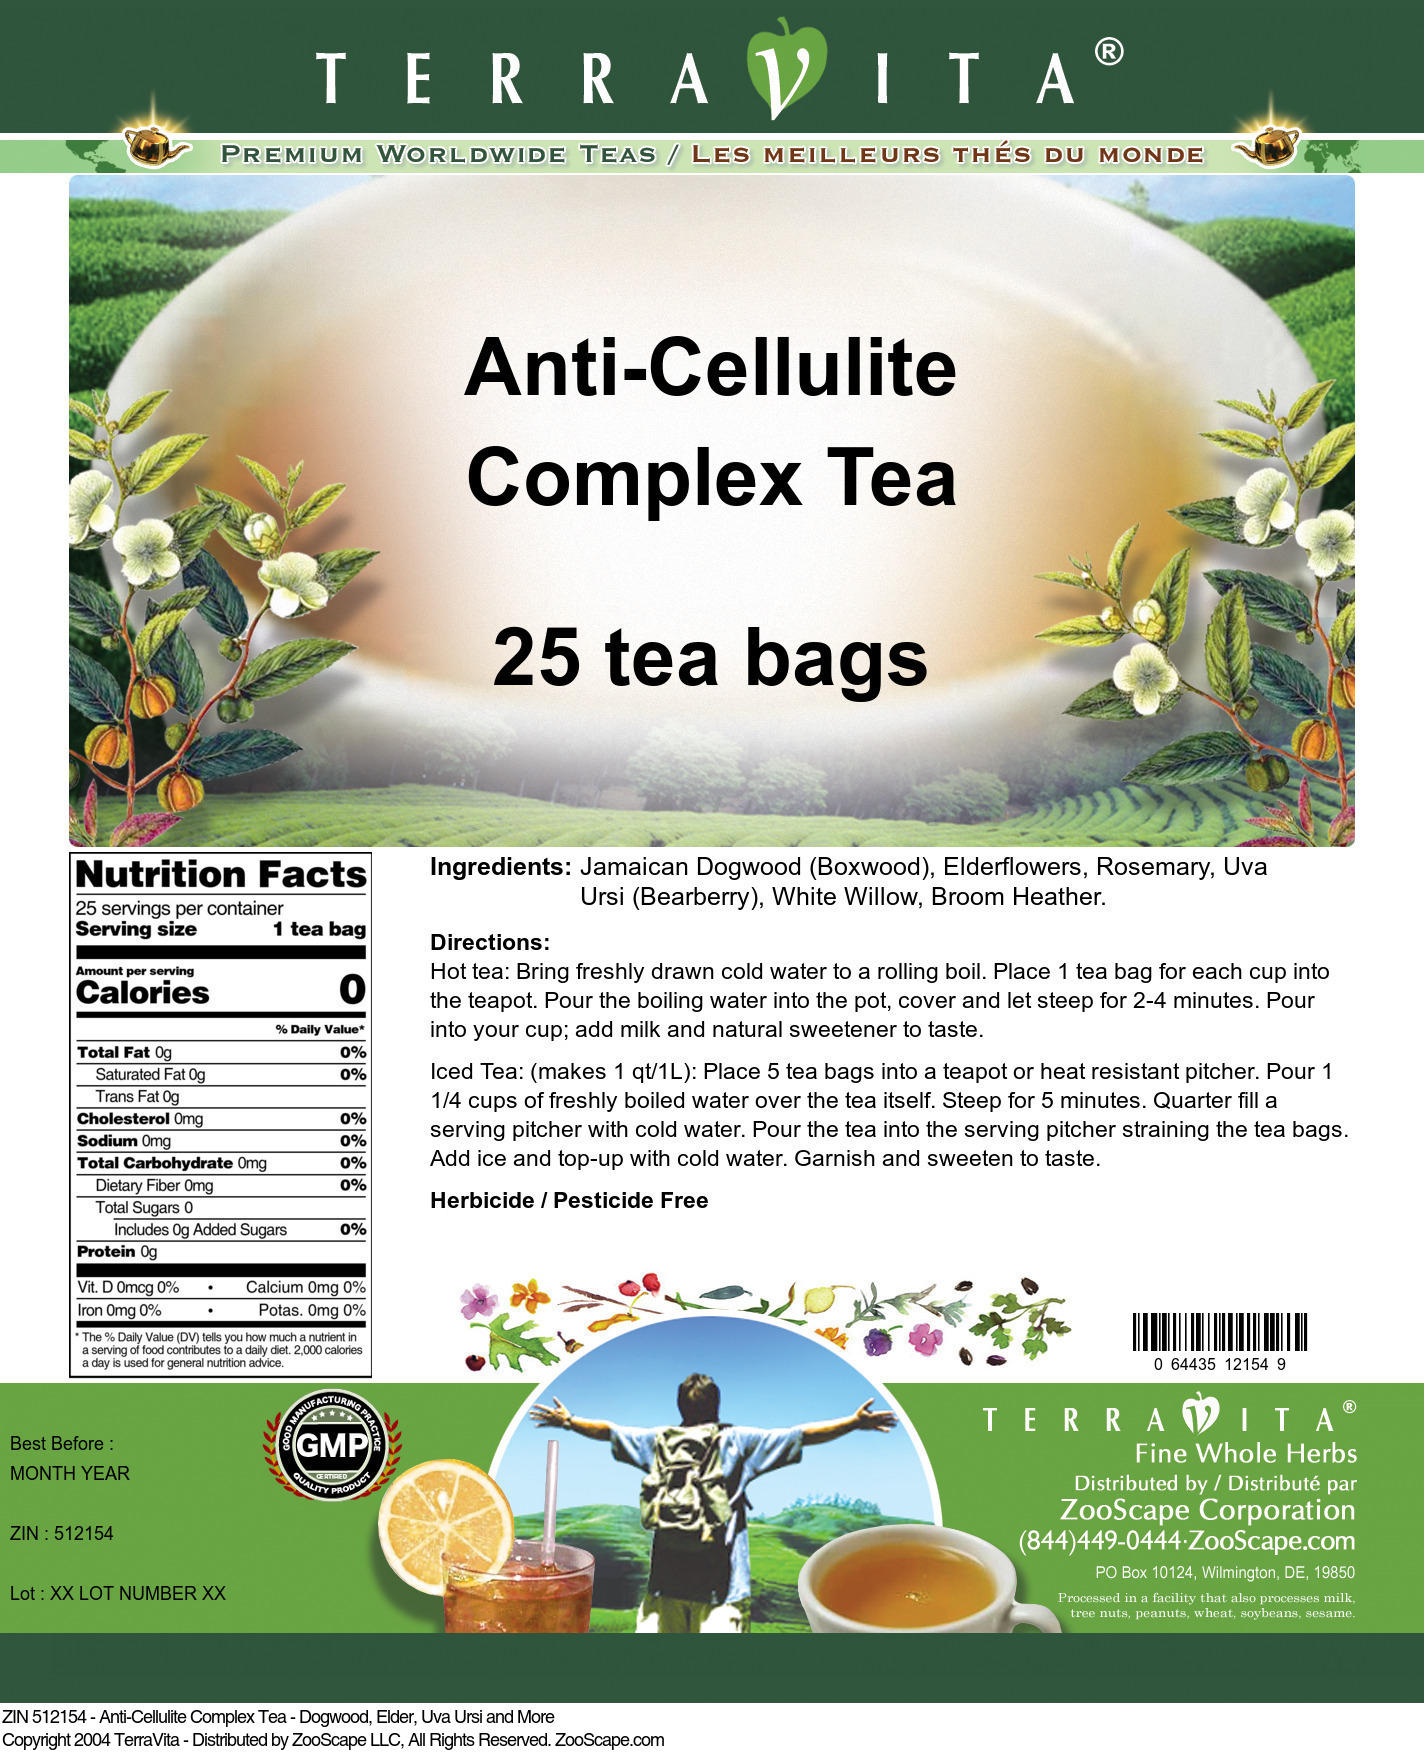 Anti-Cellulite Complex Tea - Dogwood, Elder, Uva Ursi and More - Label